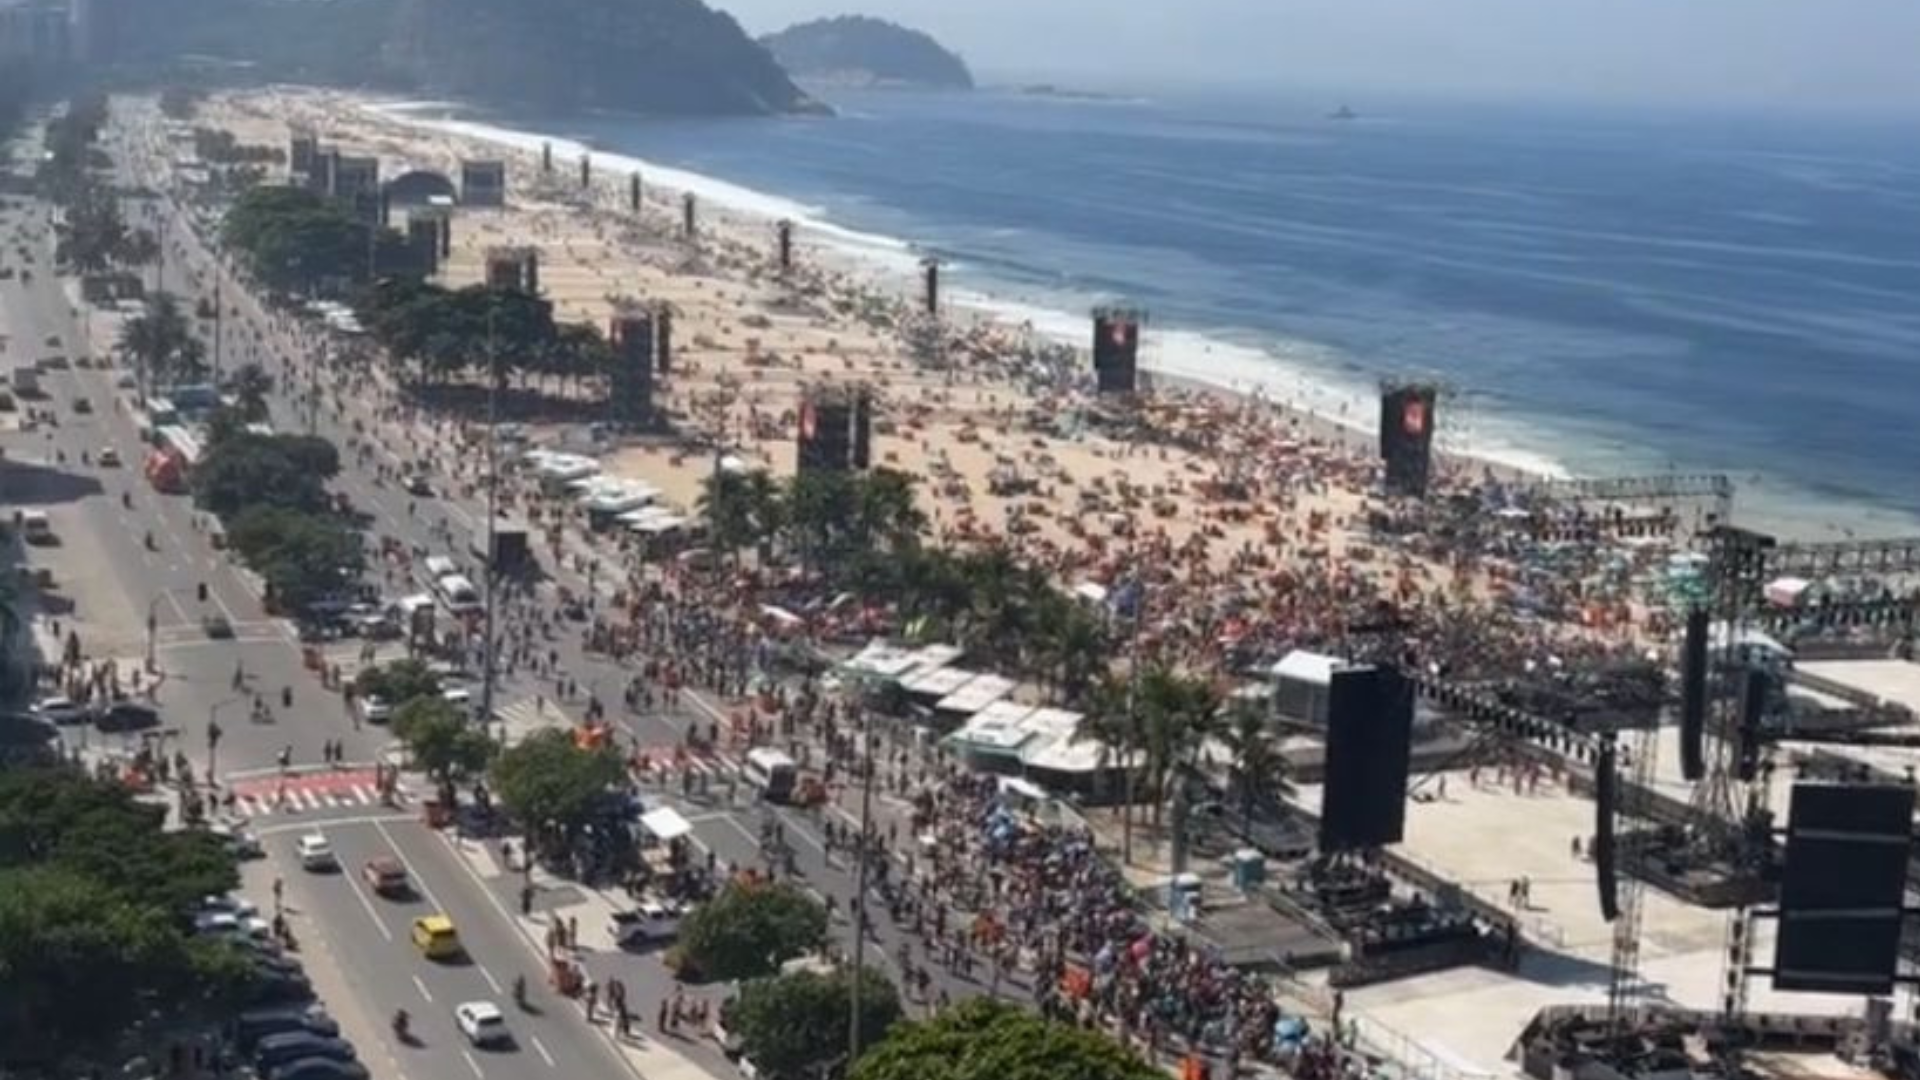 Madonna no Rio: público começa a lotar praia de Copacabana para show neste sábado